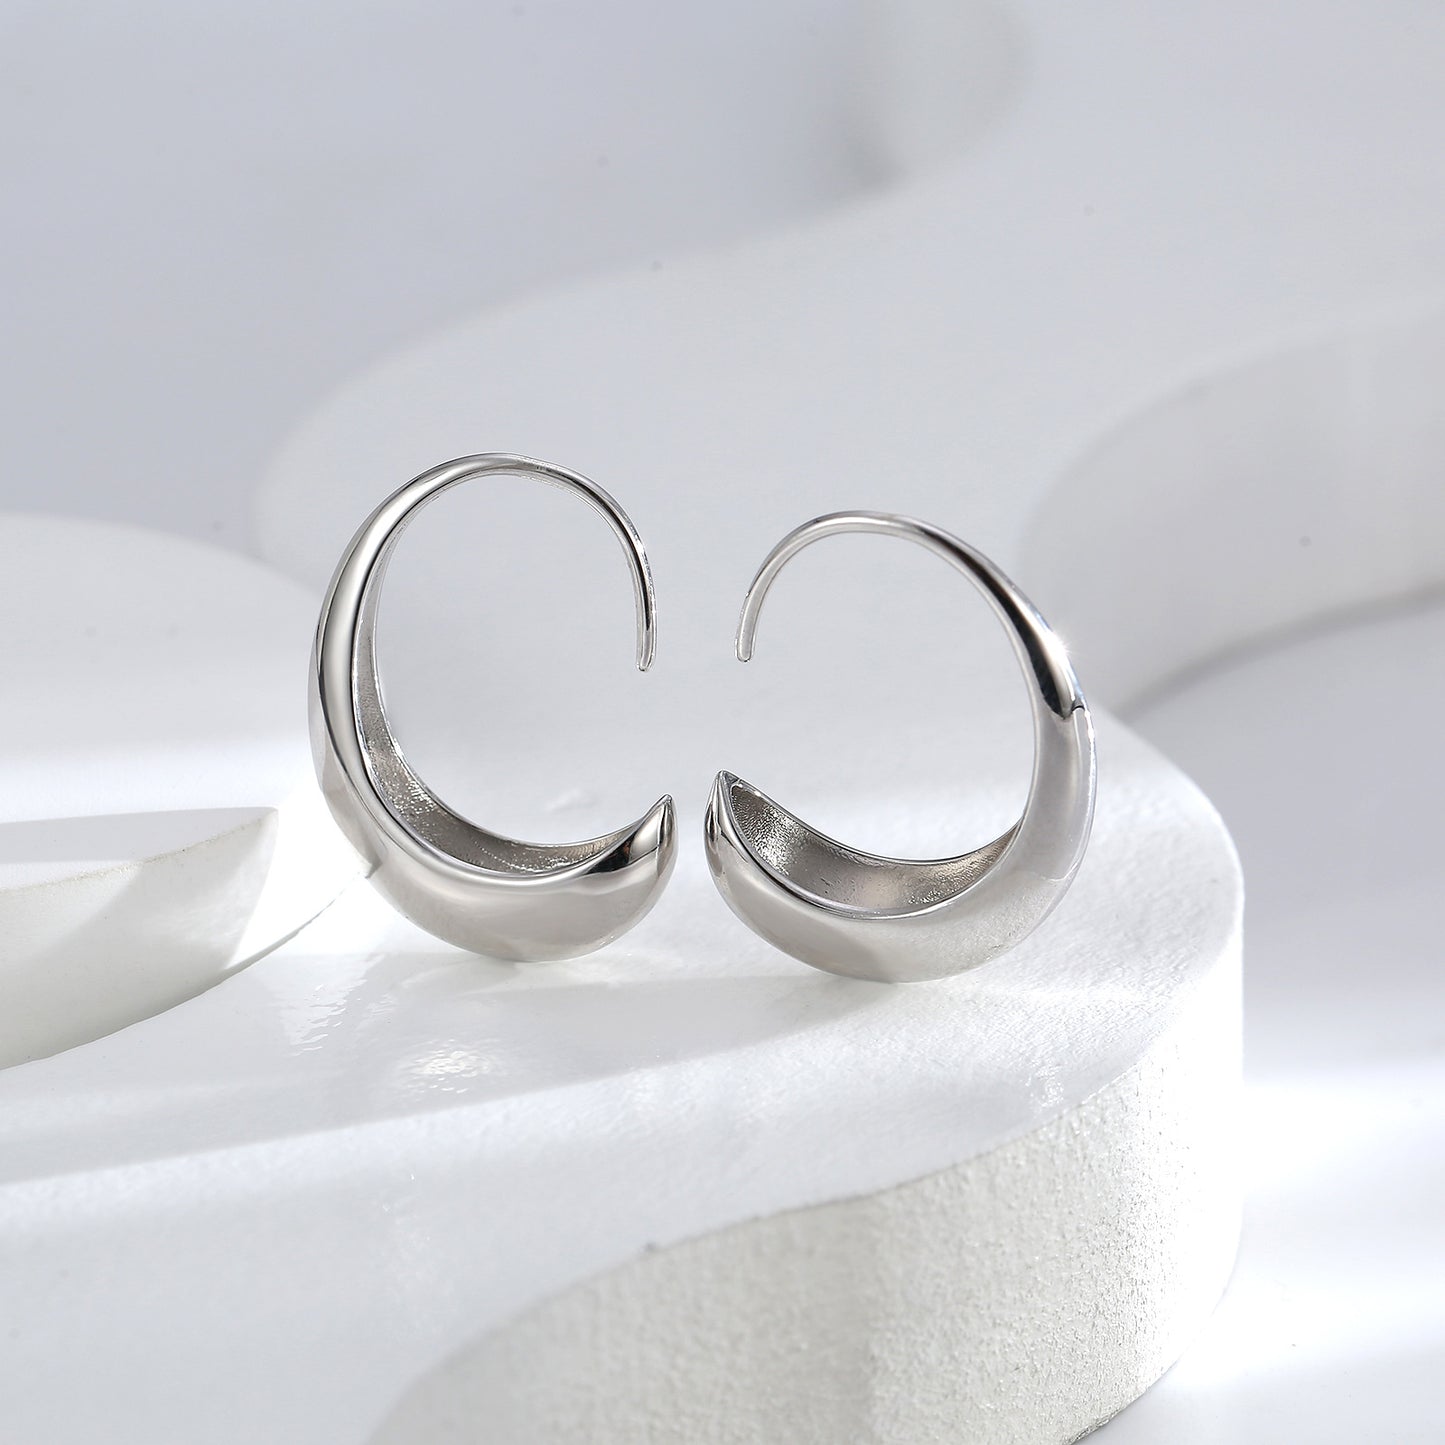 C-shaped Simple Earrings for Women